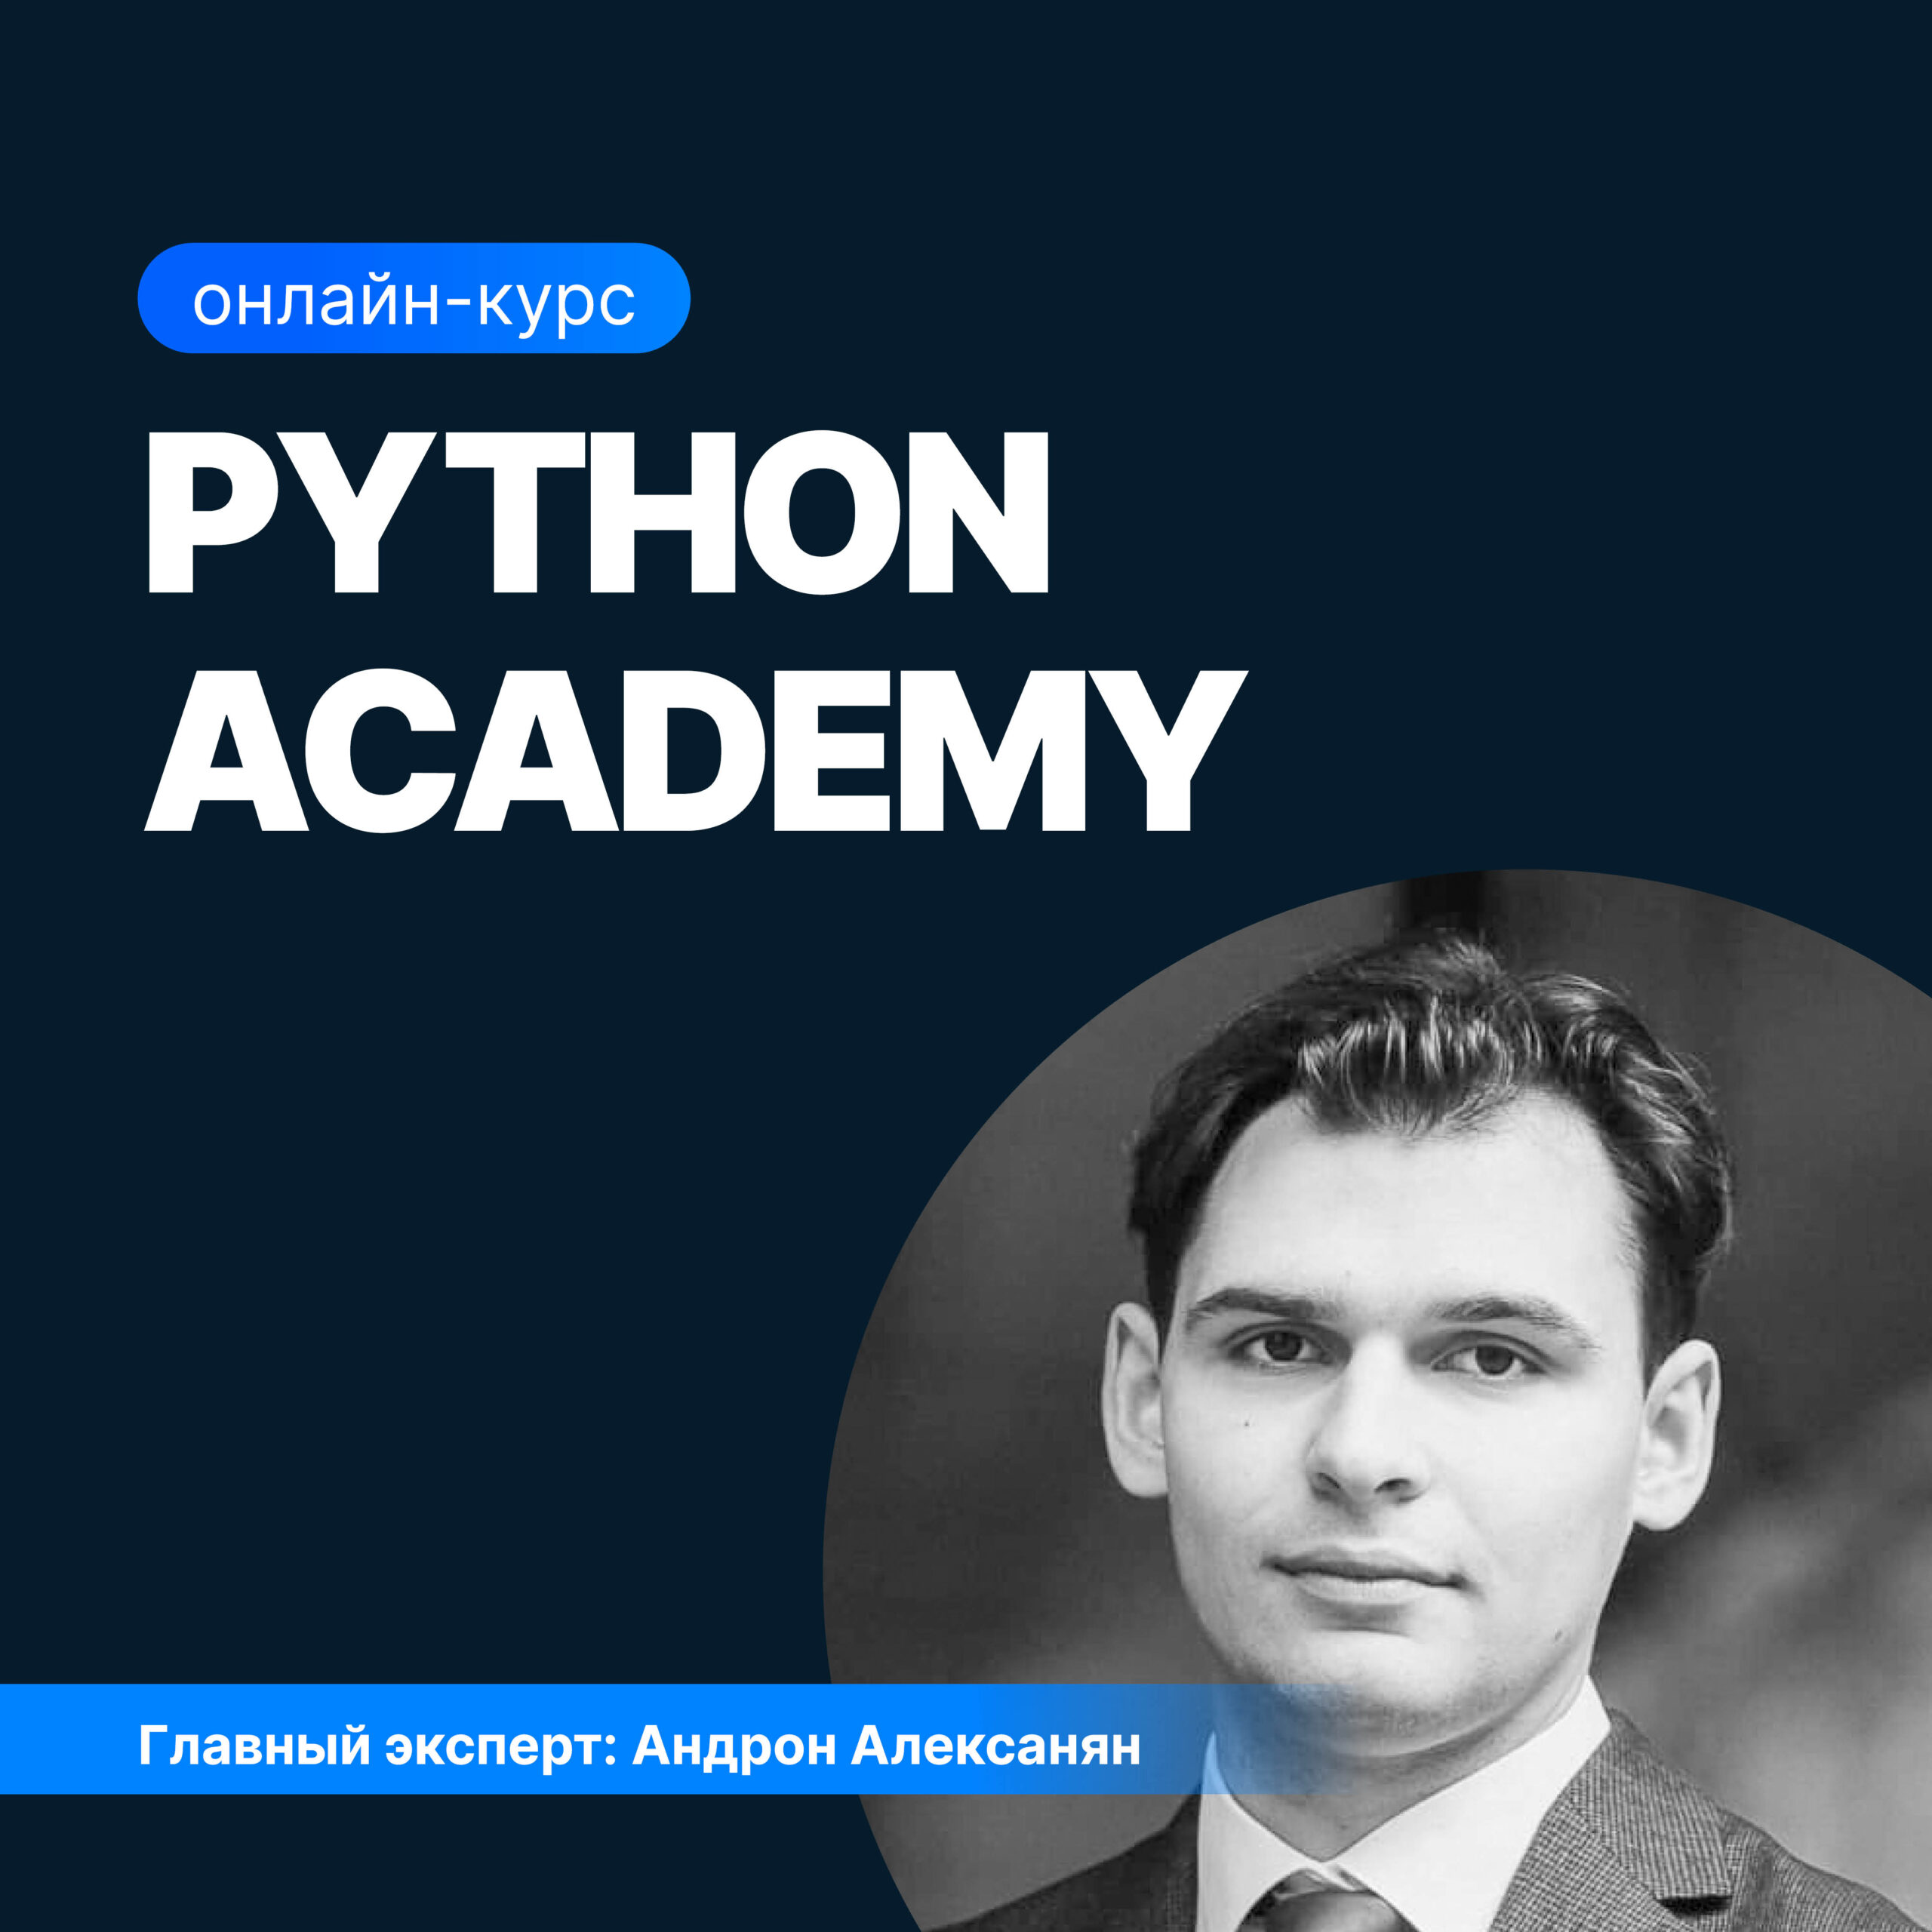 меликов павел ильич python для аналитики данных практический курс Python Academy